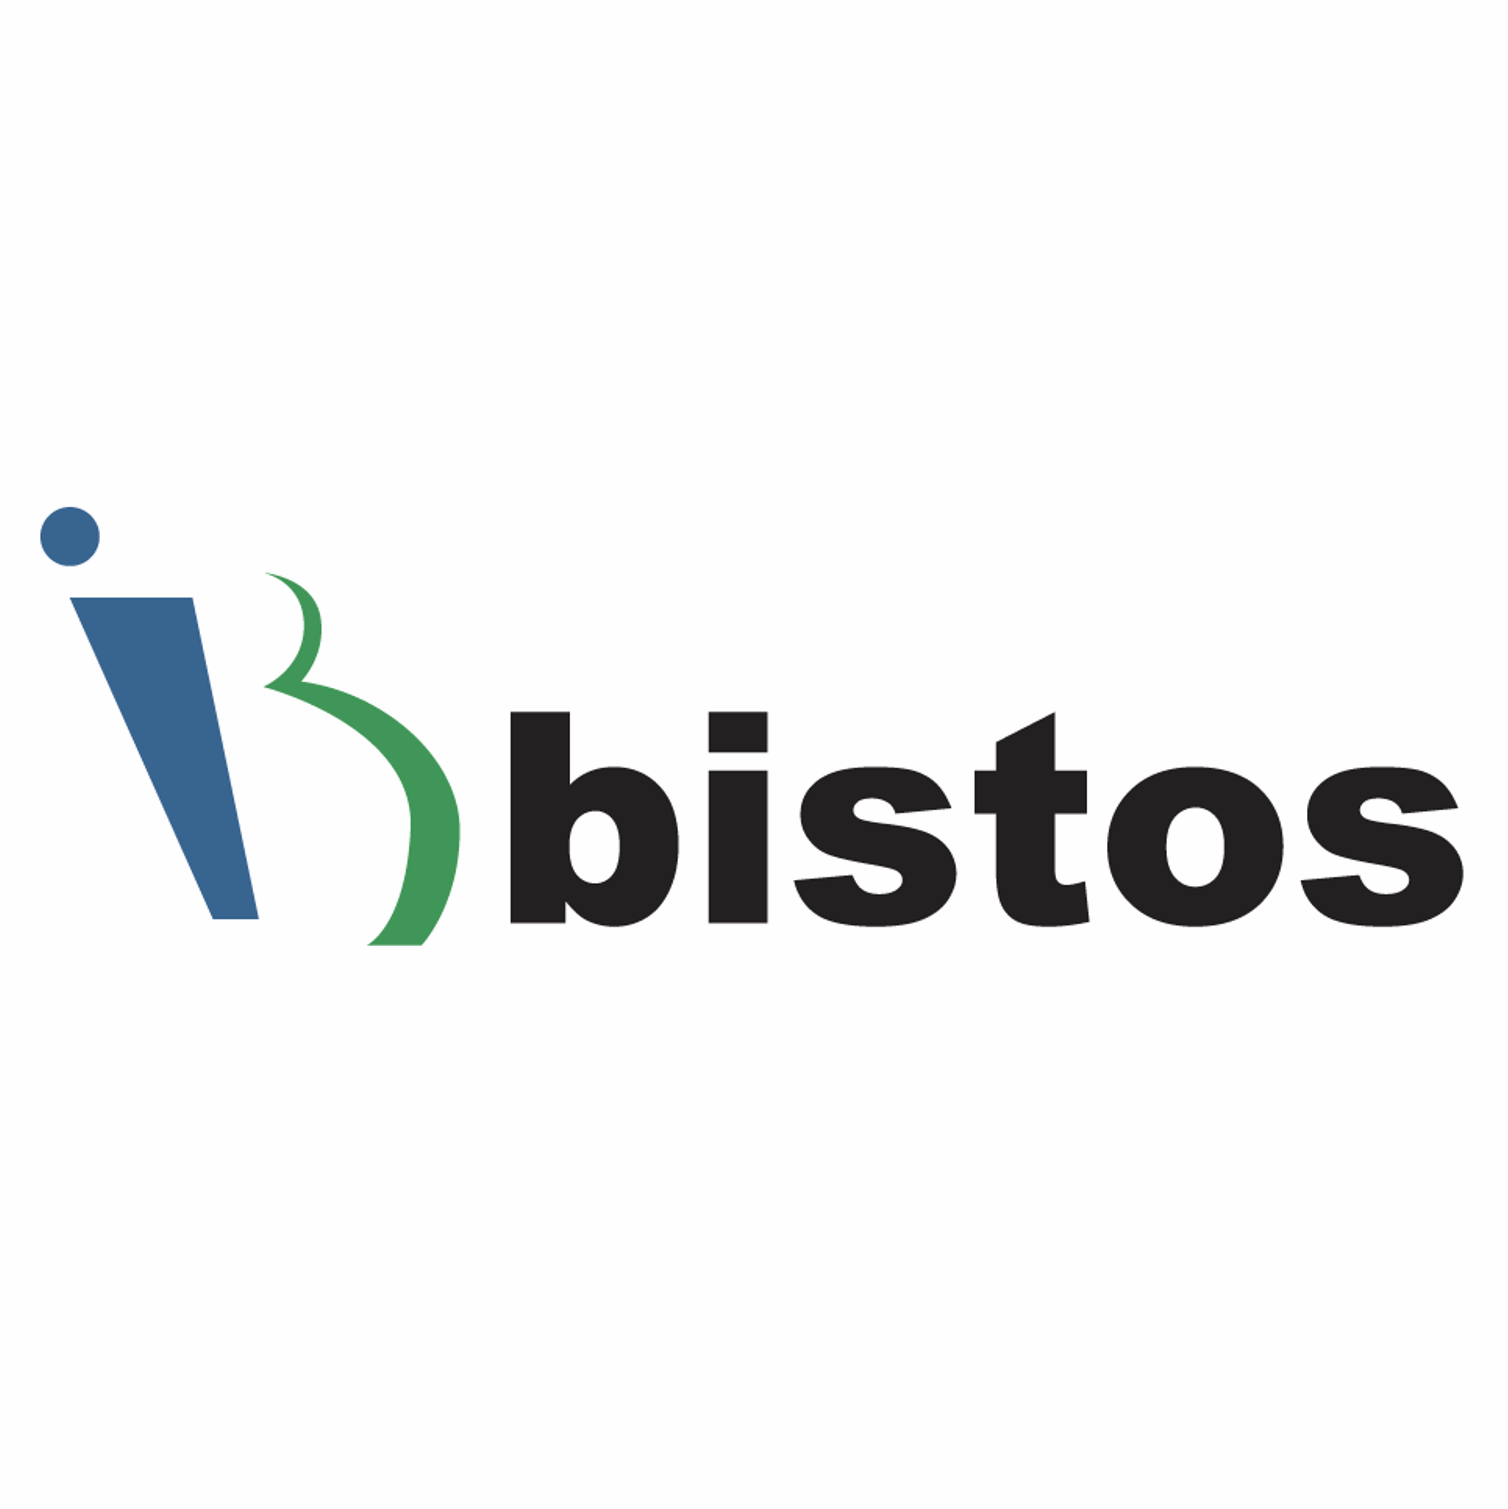 Bistos Co., Ltd.